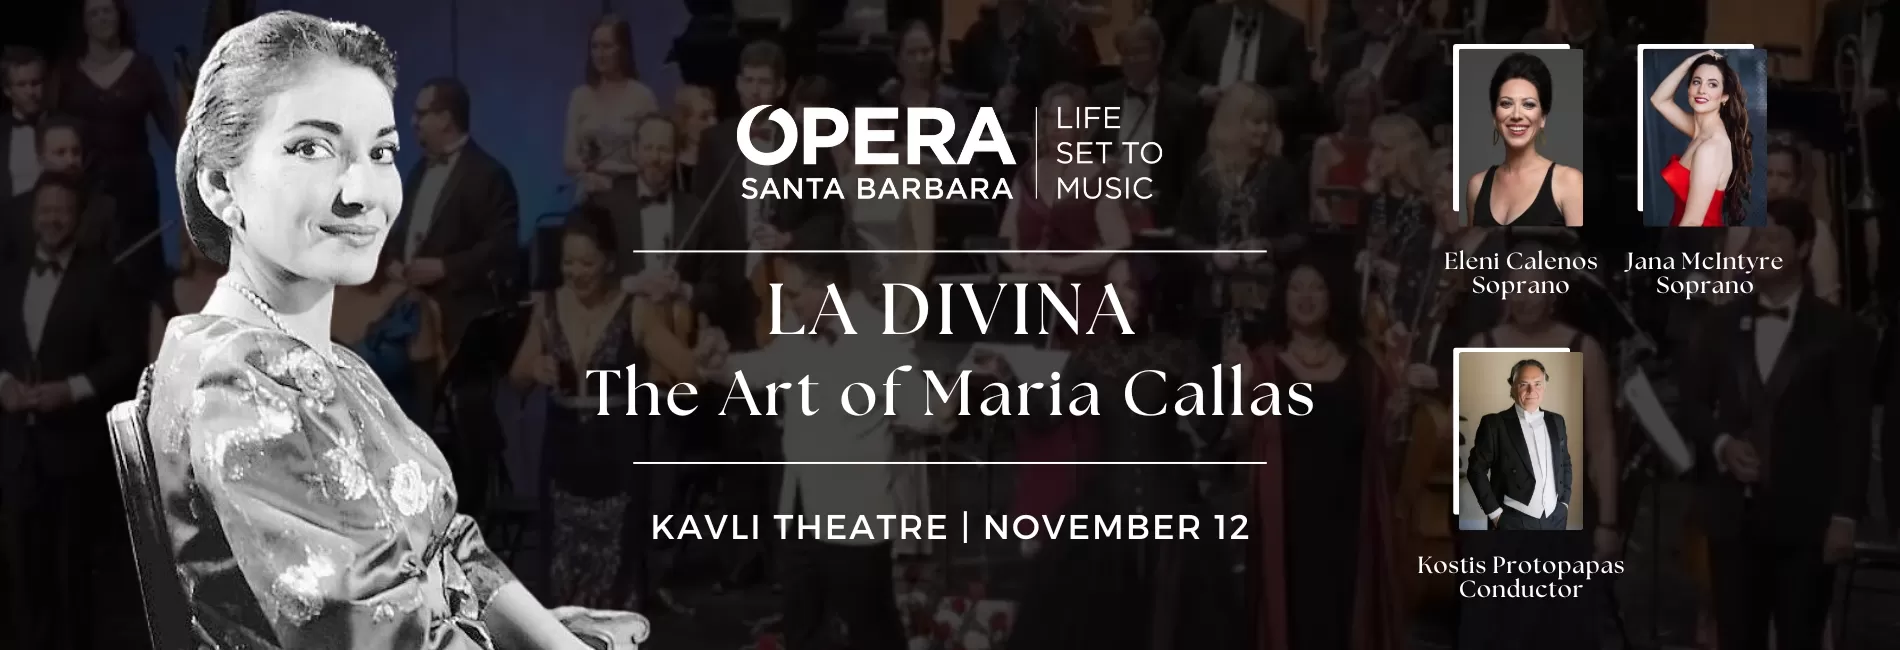 LA DIVINA: The Art of Maria Callas